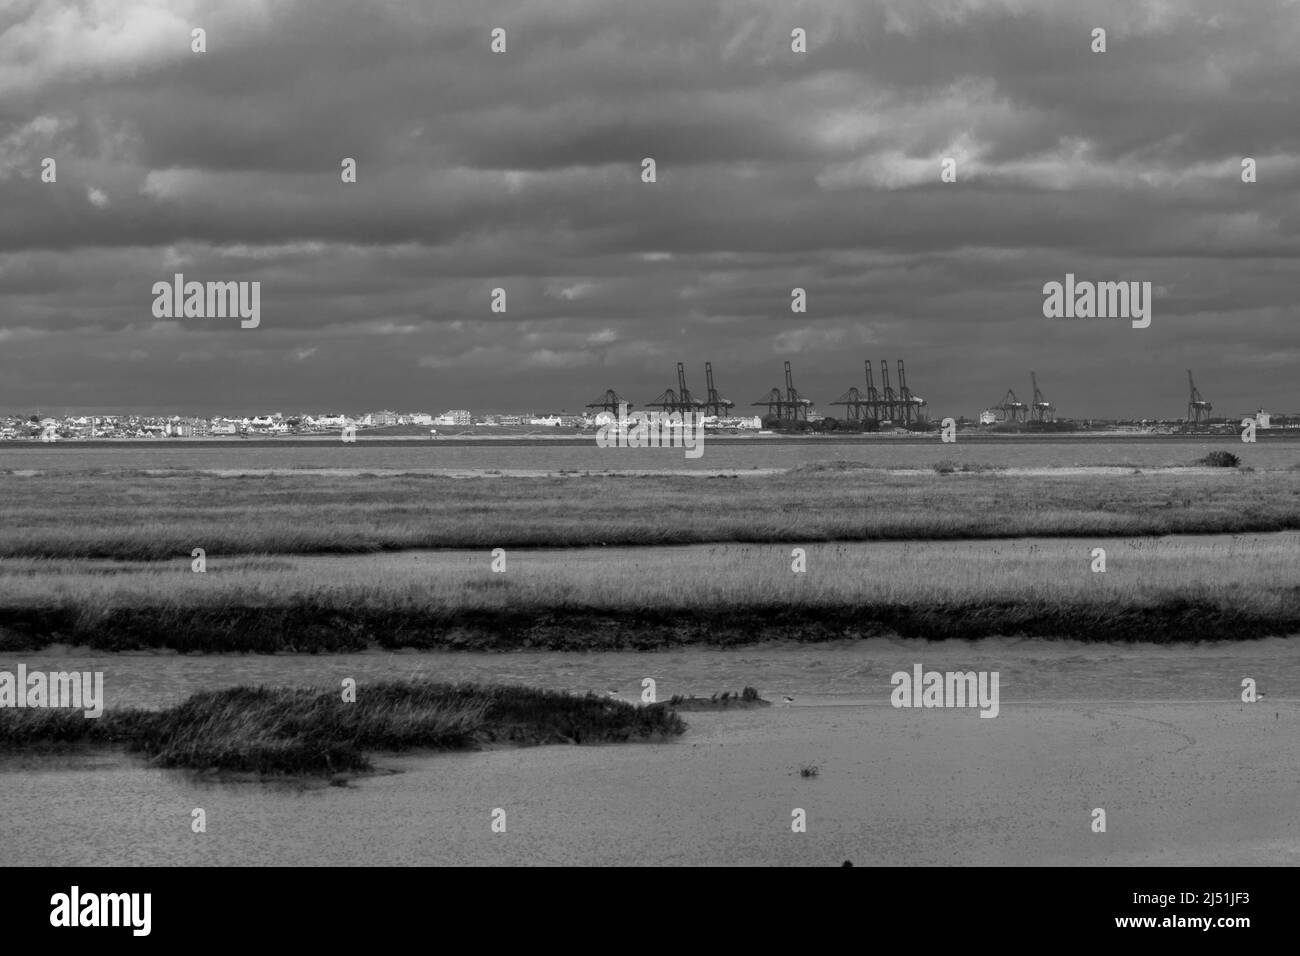 Harwich Dock grues et Dovercourt front de mer, pris de Naze Beach Essex Angleterre Royaume-Uni. Février 2022. Banque D'Images